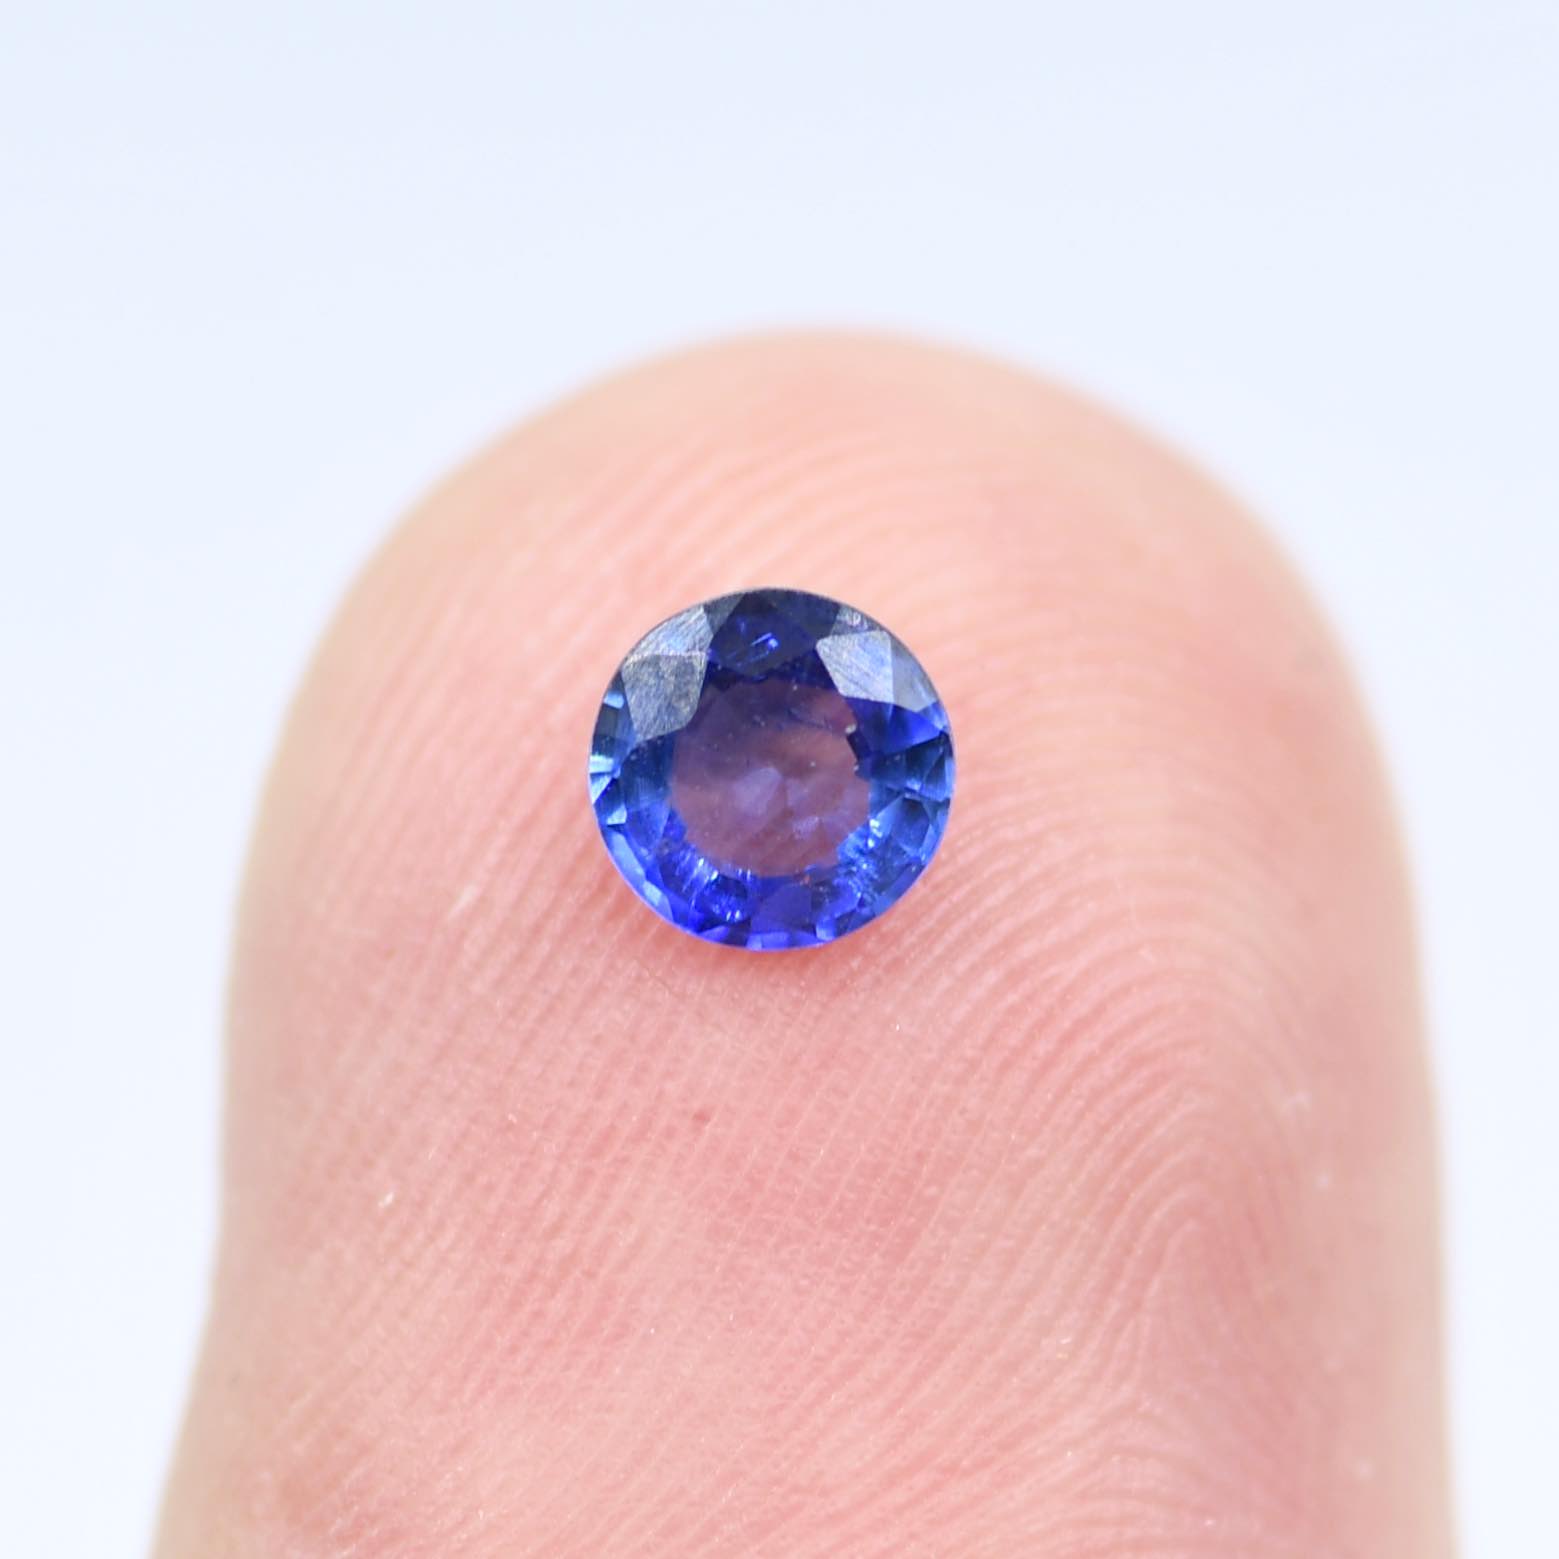 Szafir niebieski kamień szlachetny 5.2mm